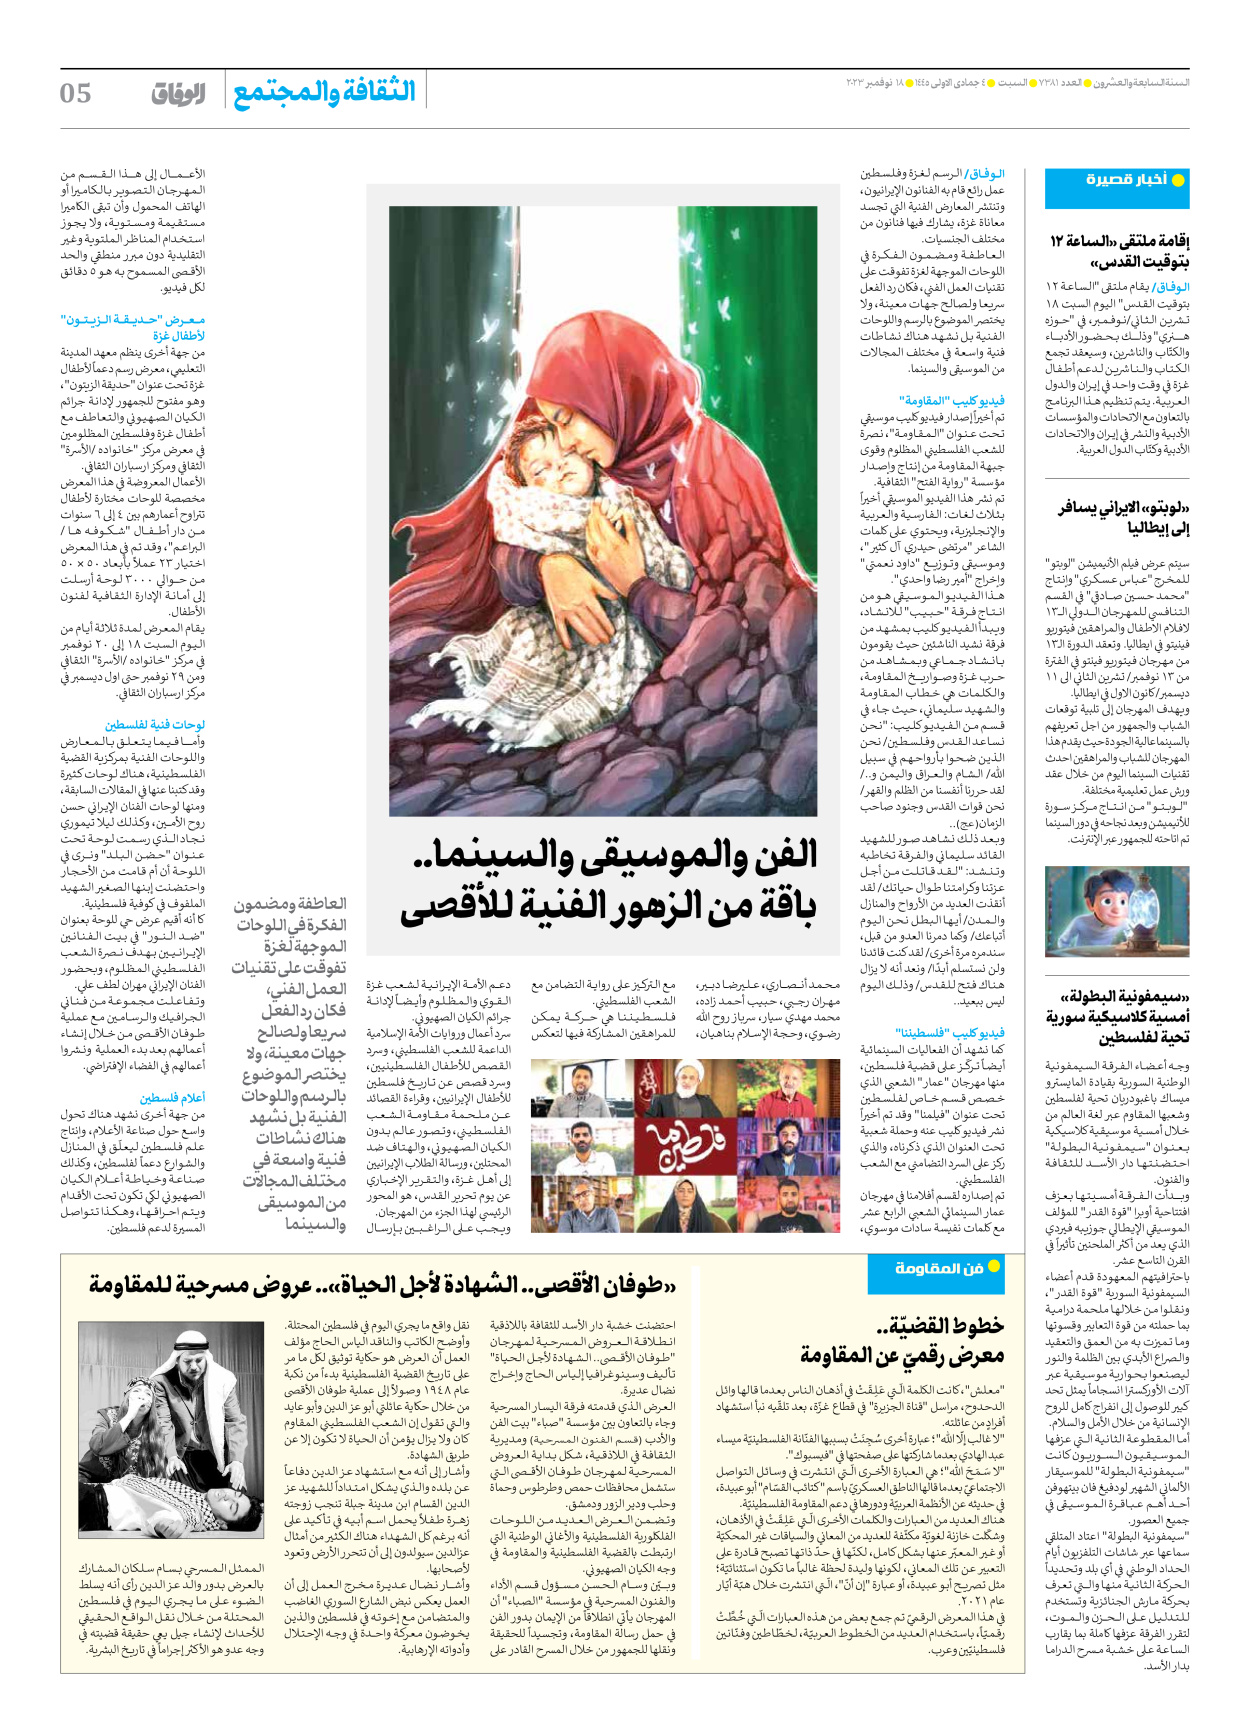 صحیفة ایران الدولیة الوفاق - العدد سبعة آلاف وثلاثمائة وواحد وثمانون - ١٨ نوفمبر ٢٠٢٣ - الصفحة ٥